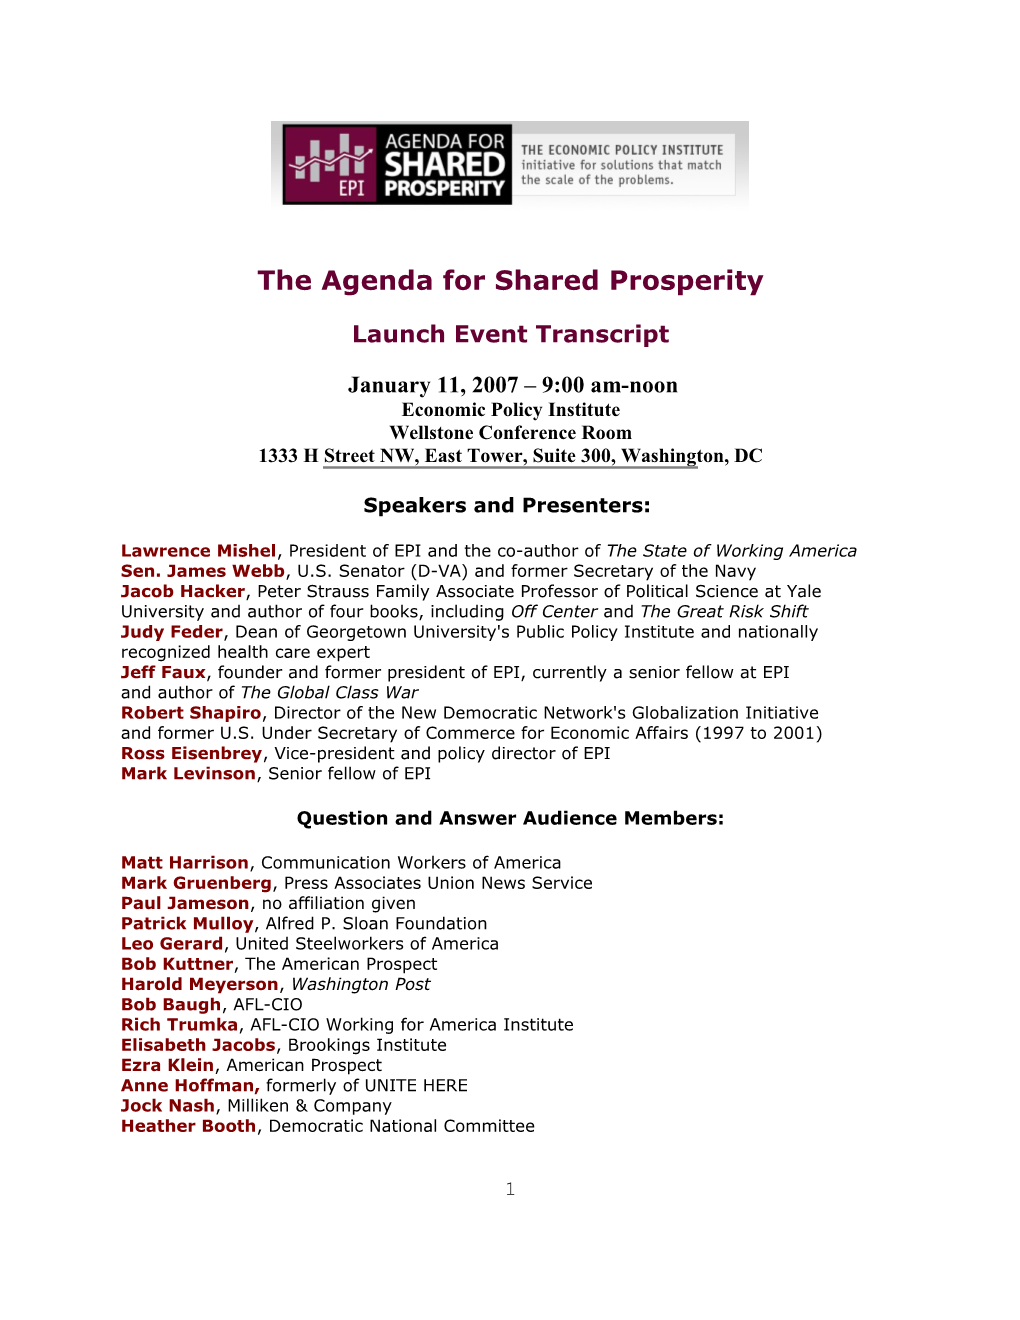 Transcript of Jan 11 2007 Launch Event